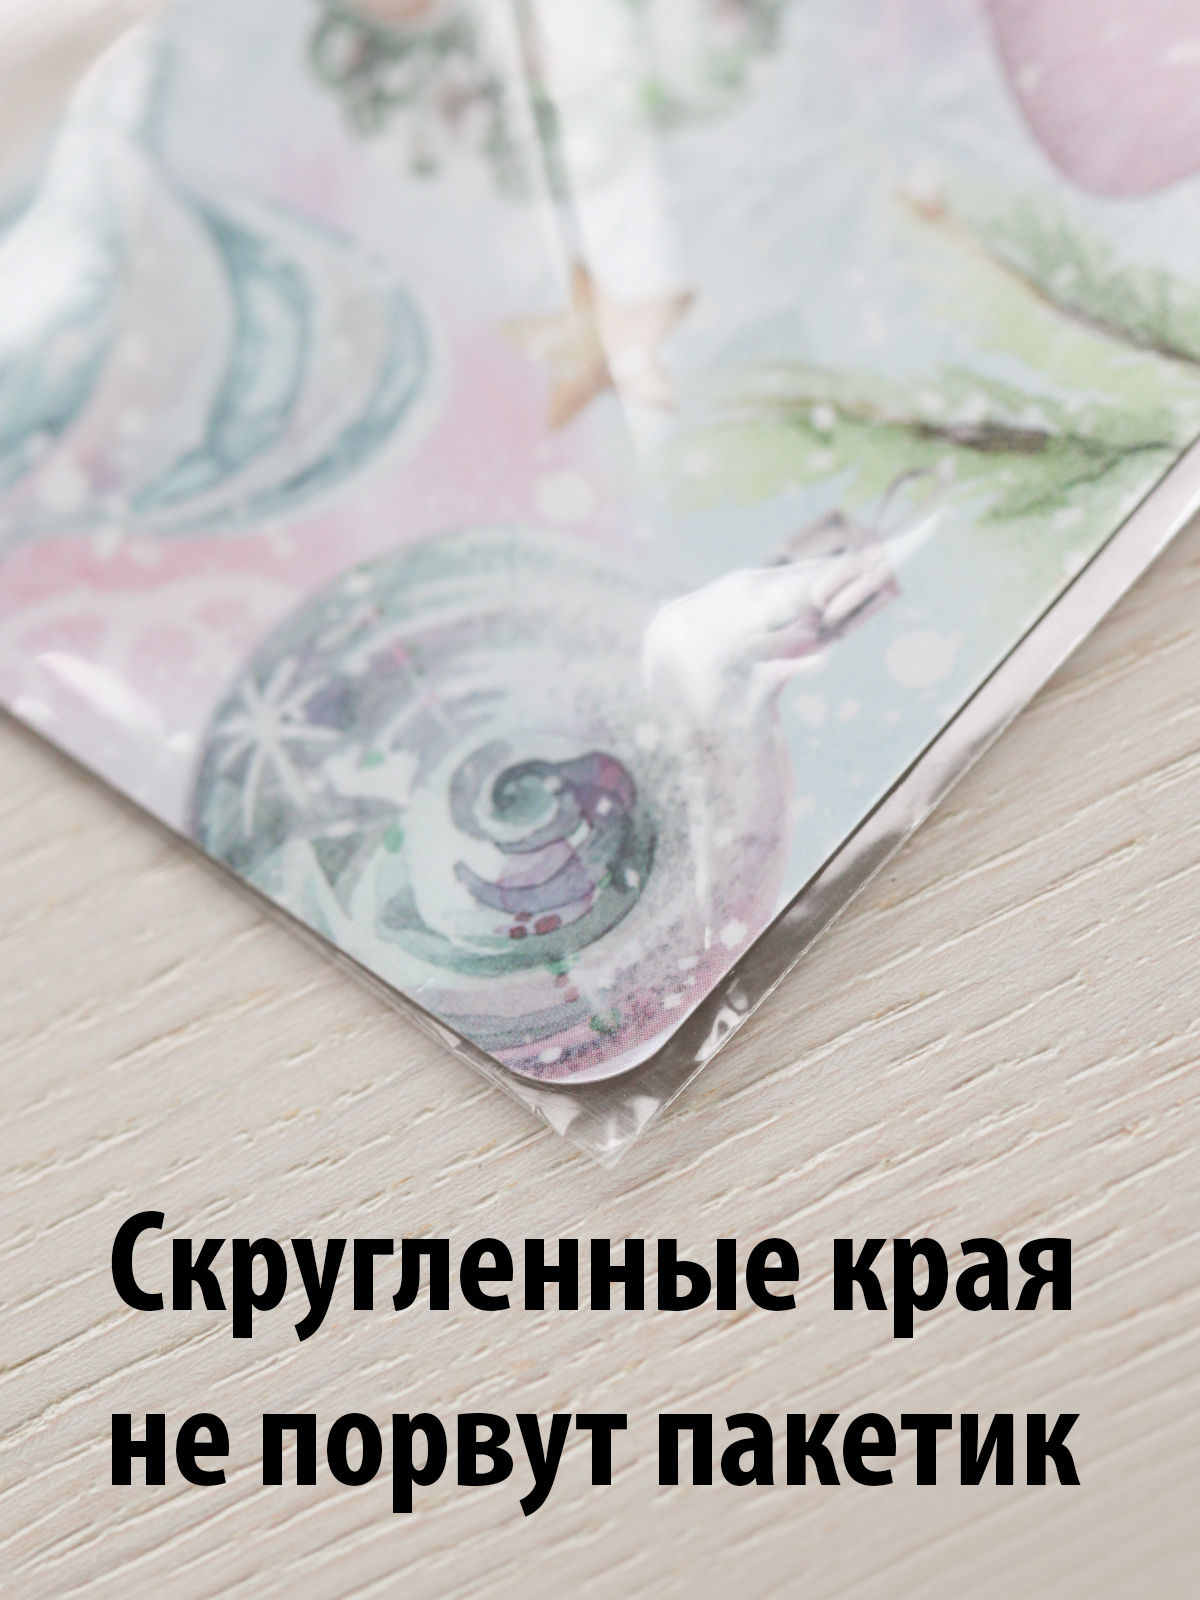 Мастер-класс по объемной открытке с дистресс-чернилами от Натальи Ольховик